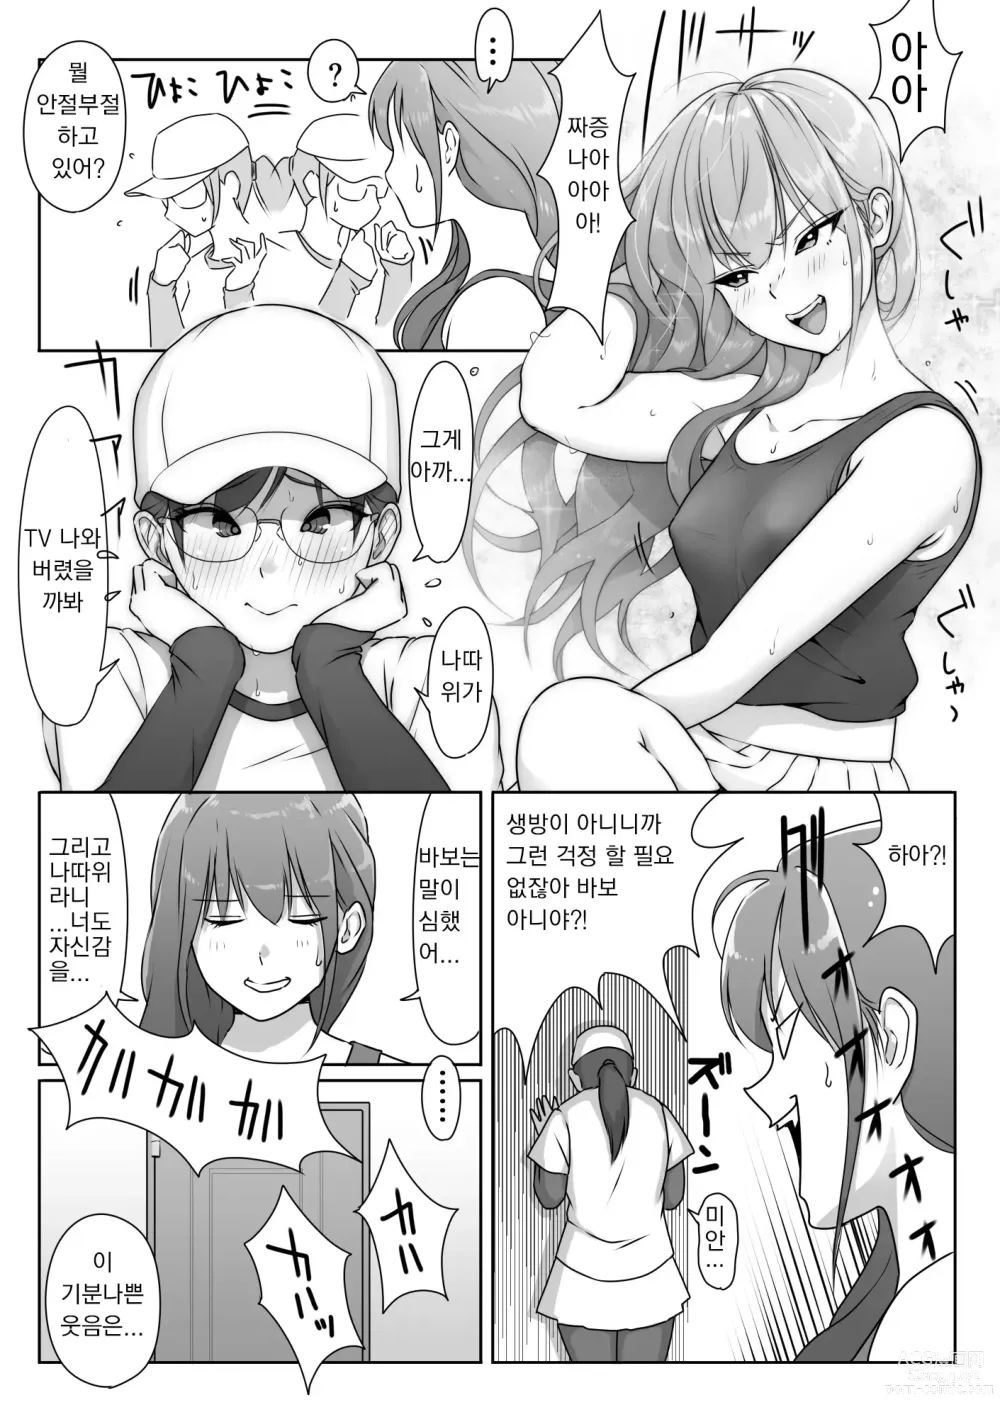 Page 19 of doujinshi 테니스부는 야구부의 손에 떨어졌습니다